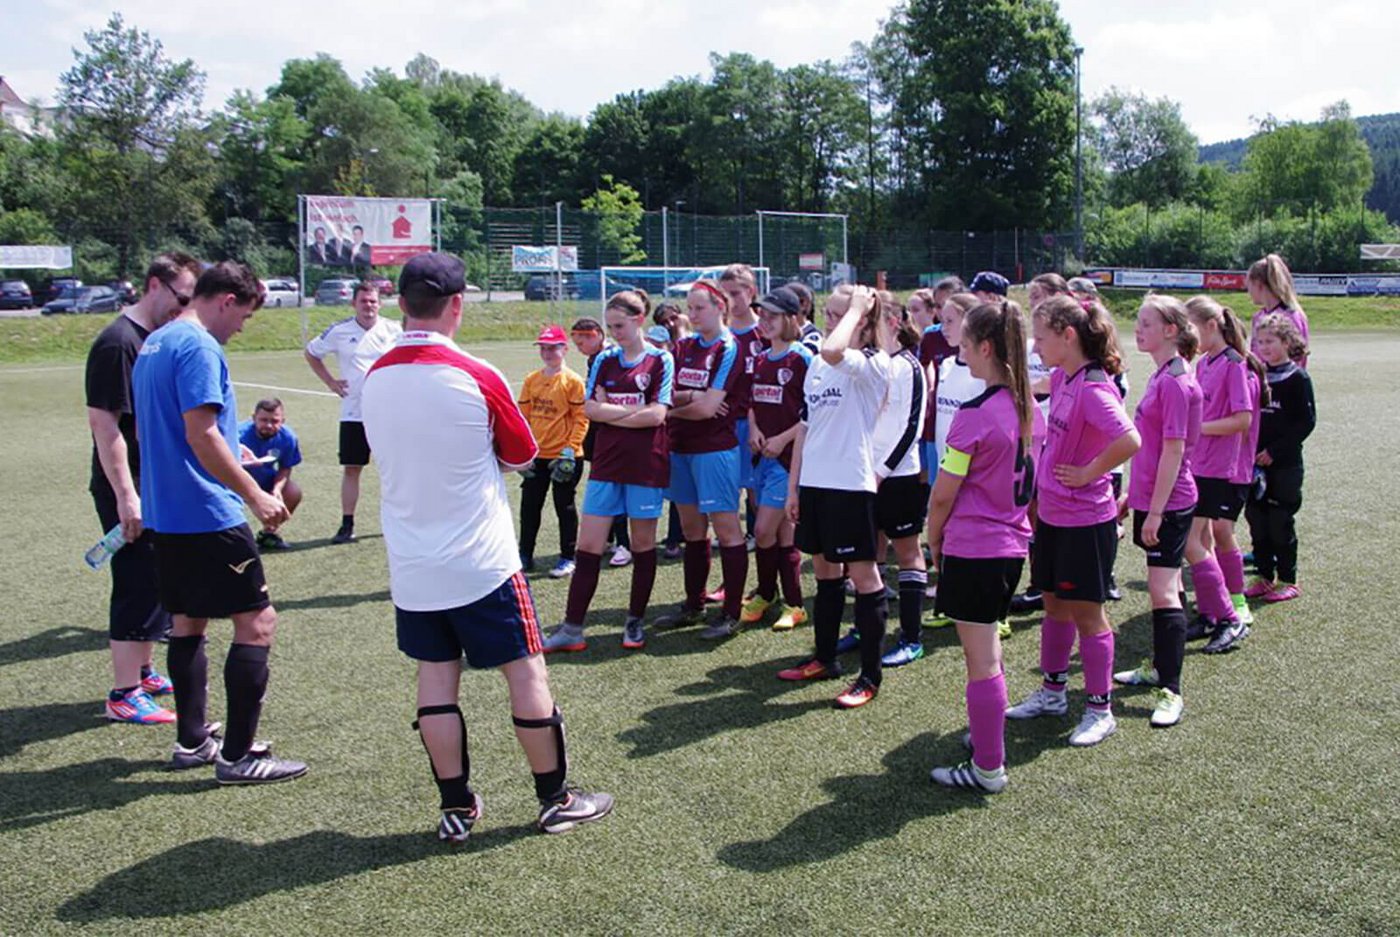 Gemeinsam mit den Kölner Gästen veranstalteten unsere U13 Juniorinnen ein großes Fußballfest